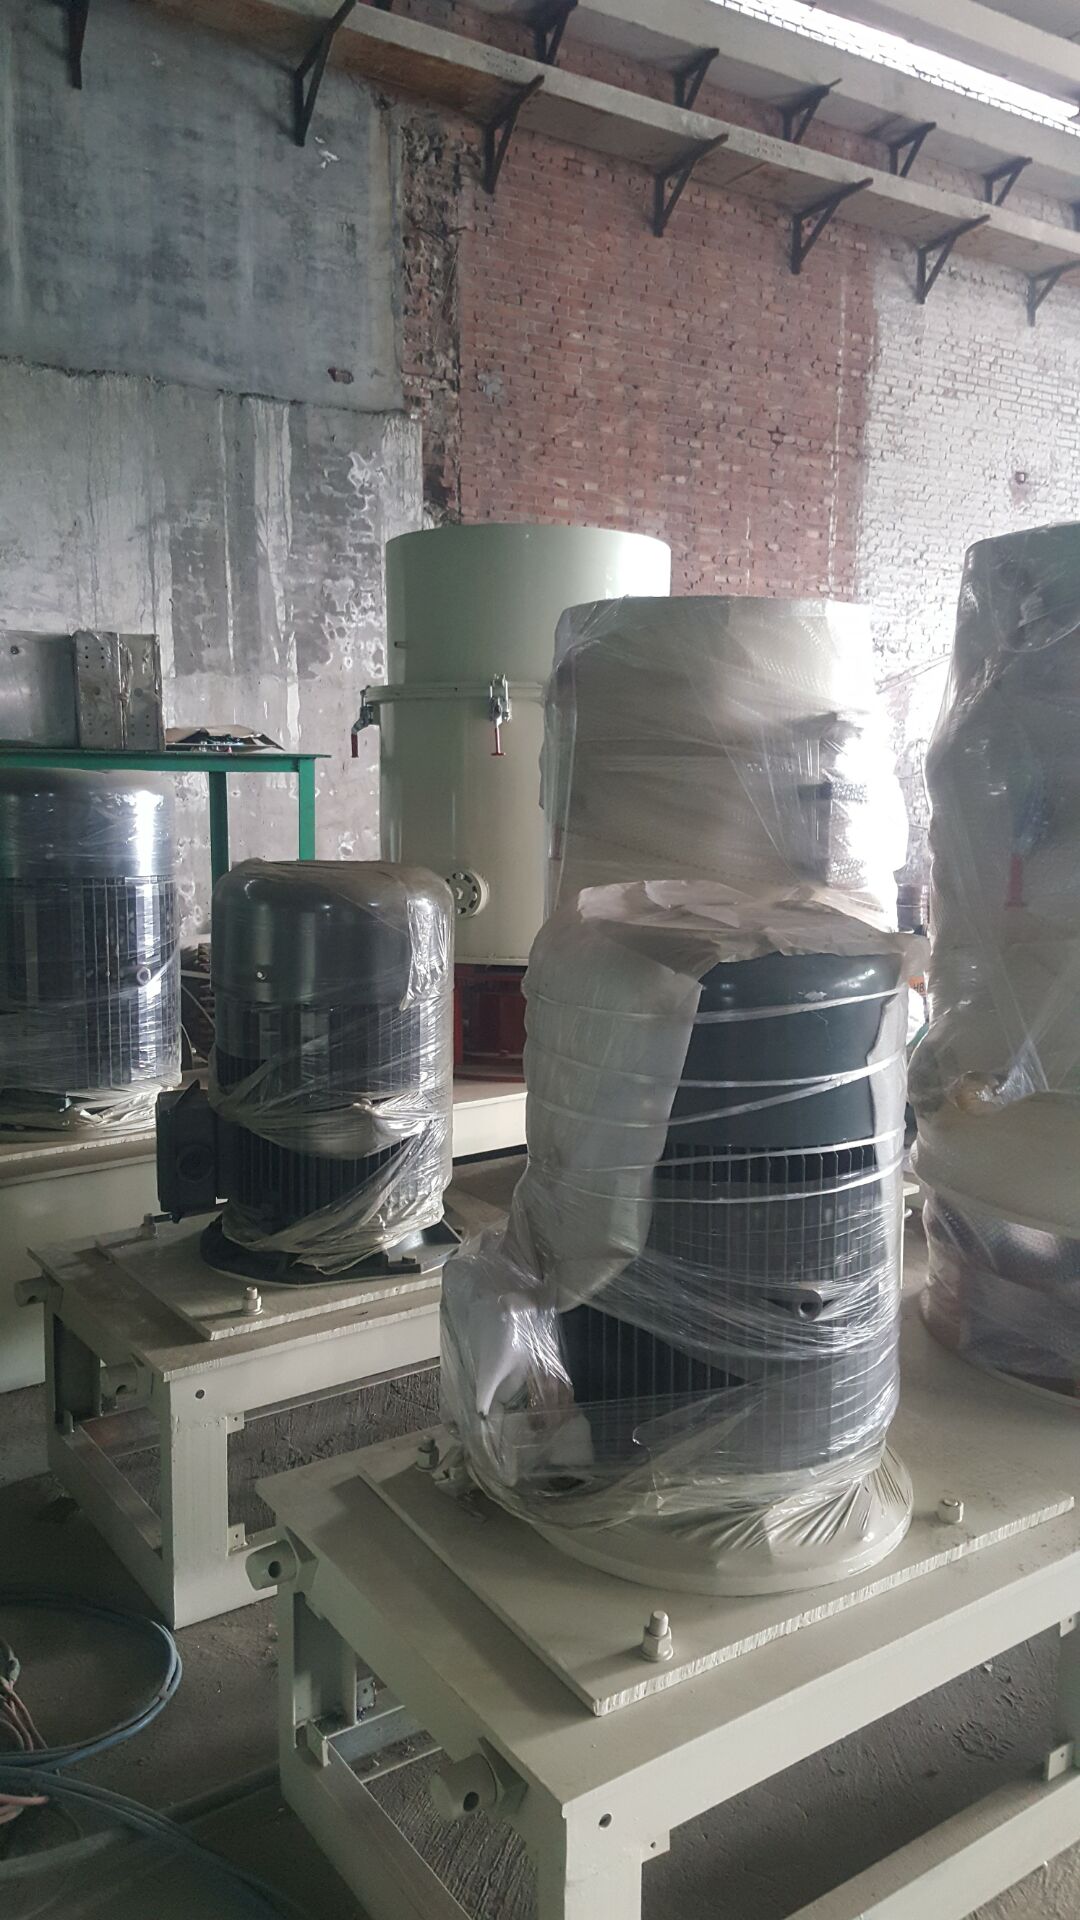 保定市塑料团粒机厂家河北智皓机械提供塑料废丝团粒机价格和图片 塑料团粒机